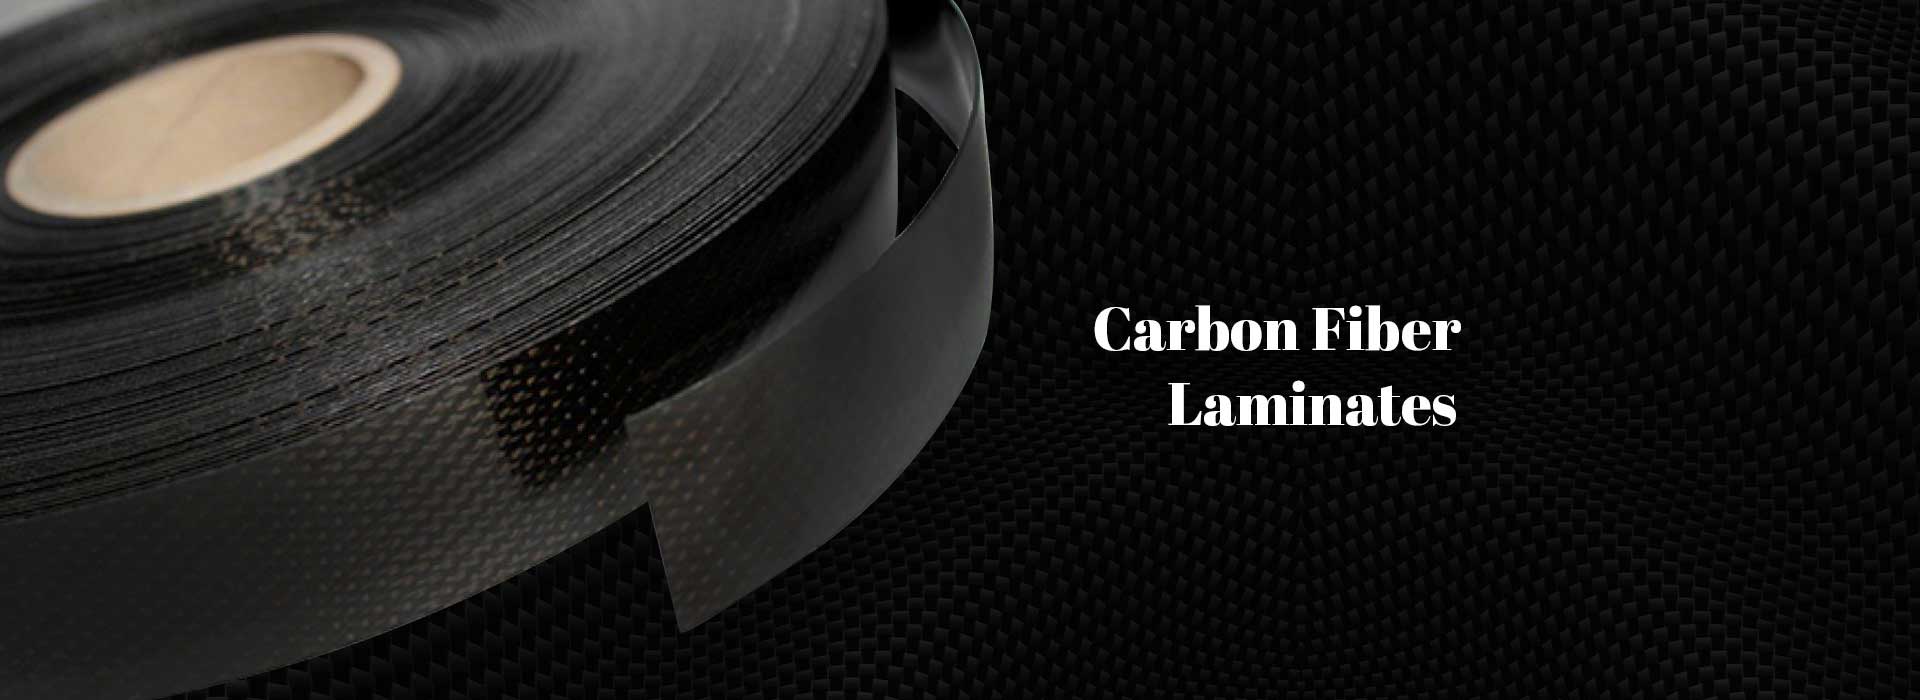 Carbon Fiber Laminates